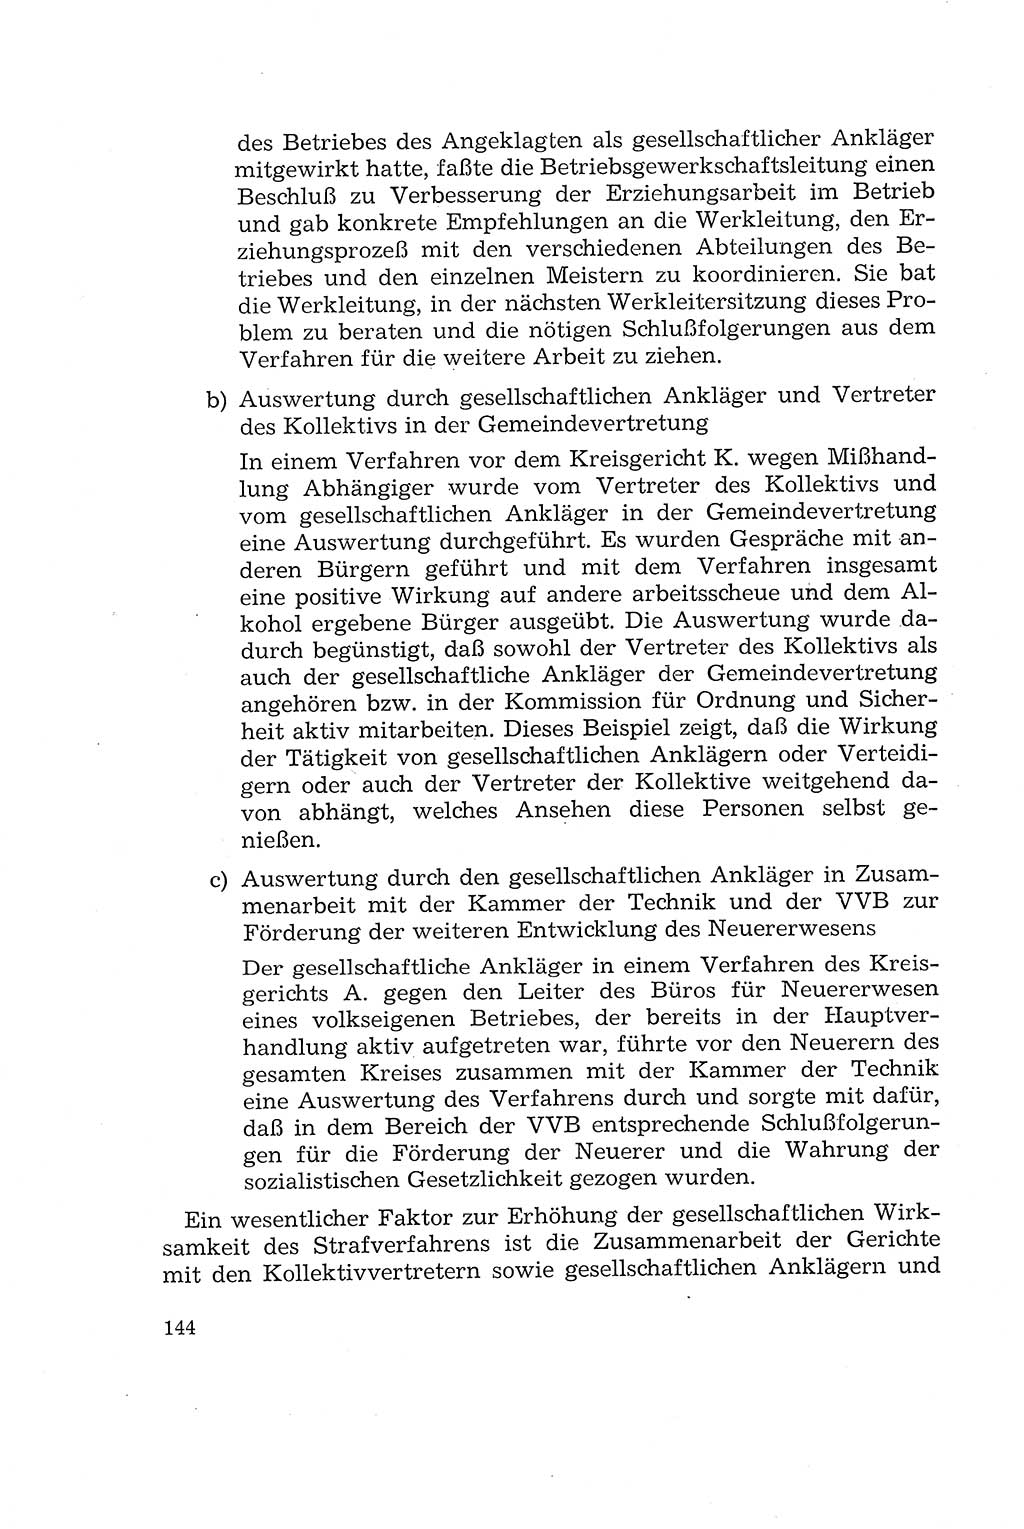 Die Mitwirkung der Werktätigen am Strafverfahren [Deutsche Demokratische Republik (DDR)] 1966, Seite 144 (Mitw. Str.-Verf. DDR 1966, S. 144)